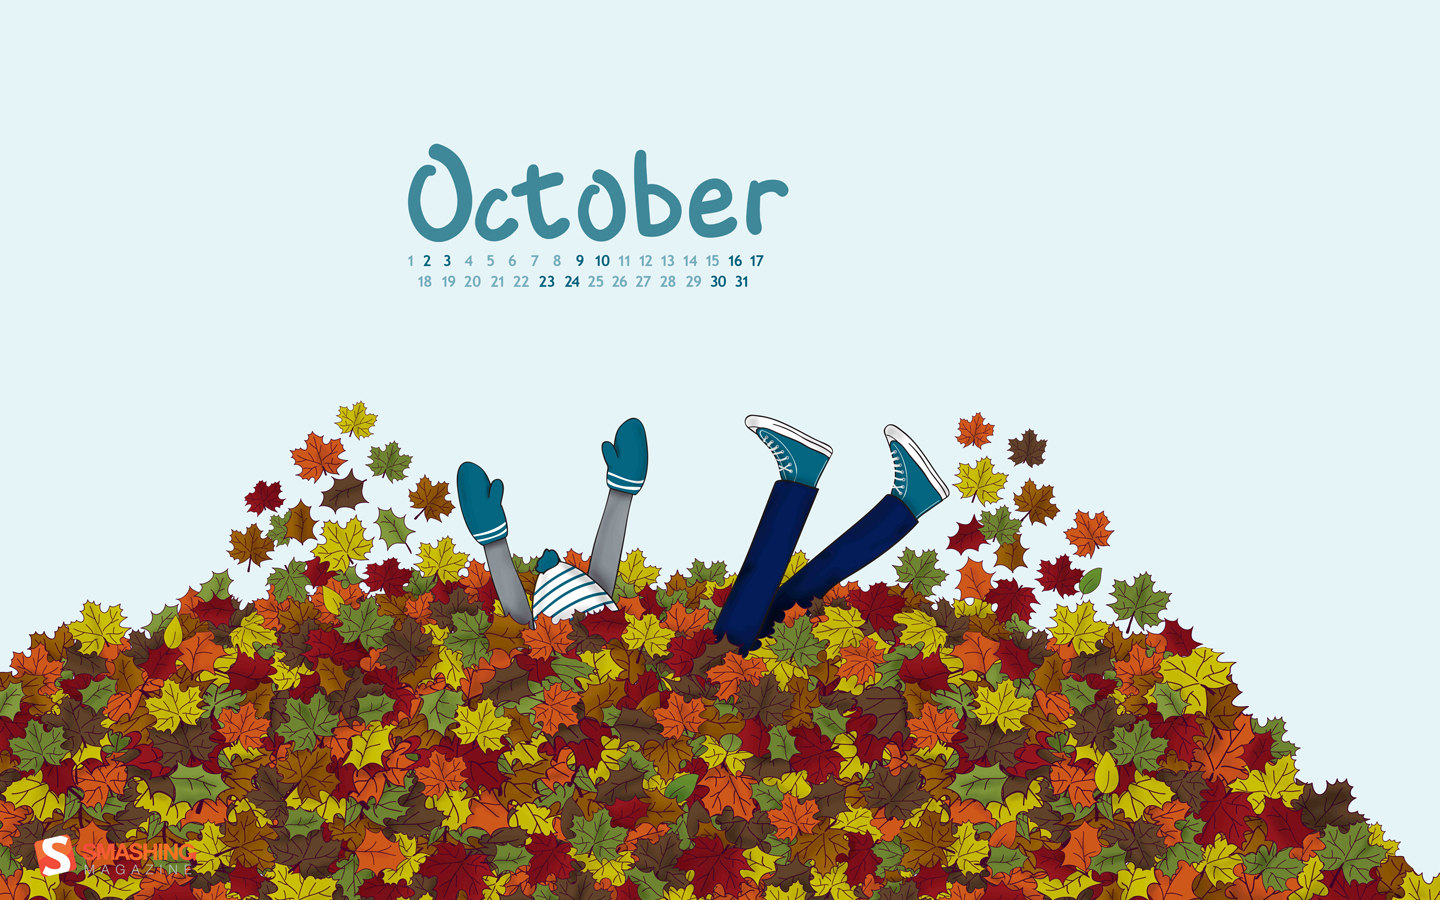 Calendar Wallpaper Of The Month